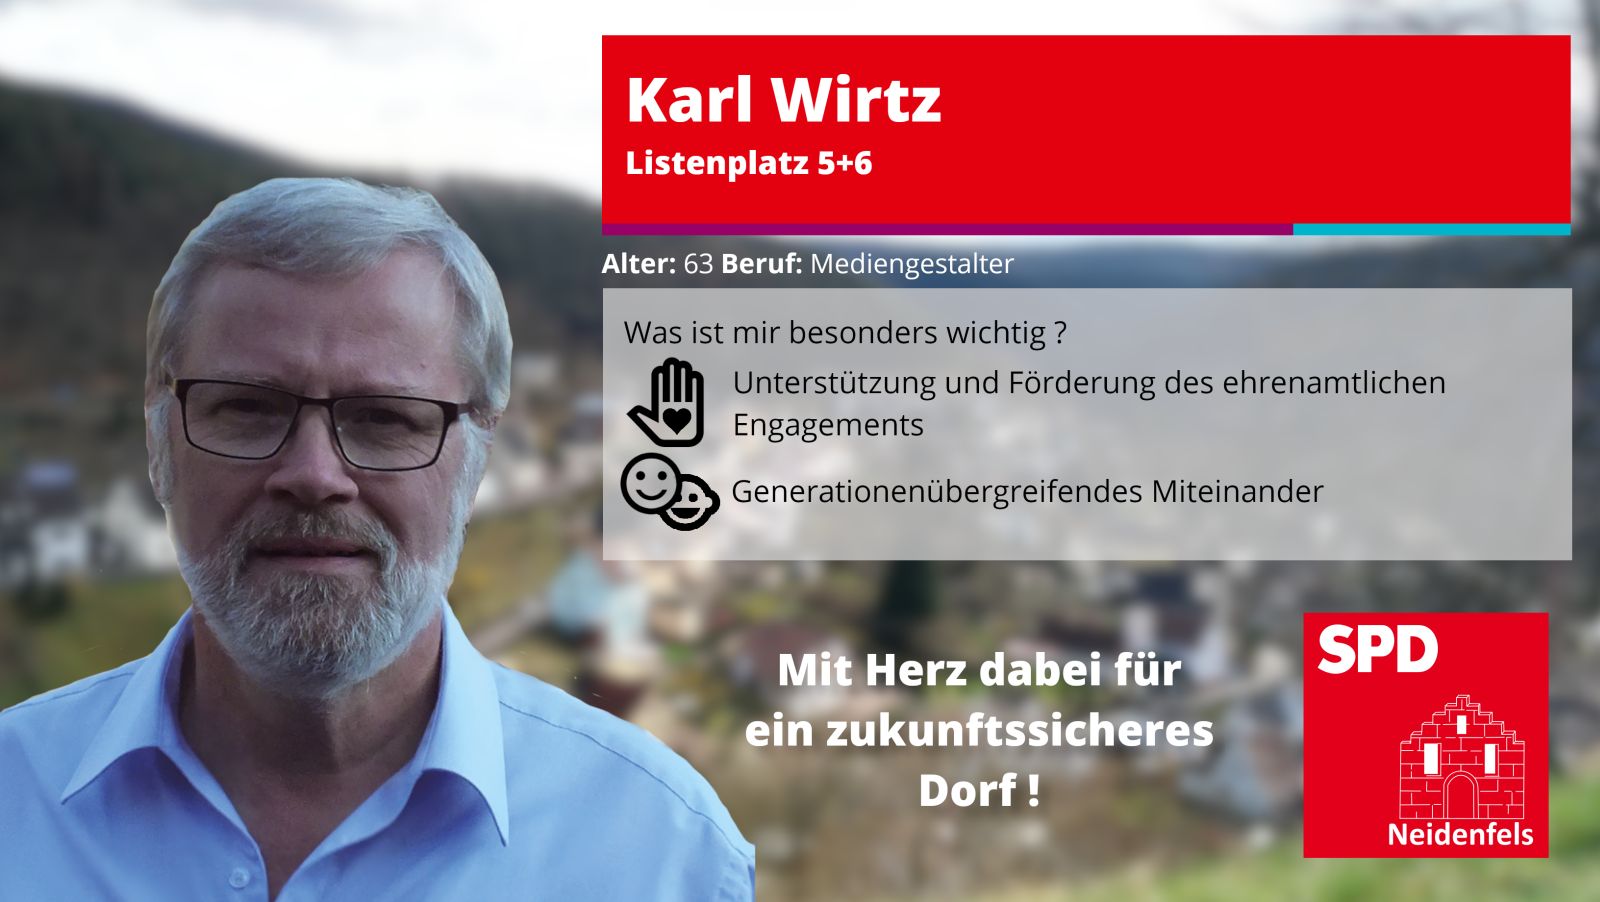 Kandidat Karl Wirtz, Alter: 63 Beruf: Mediengestalter. Besonders wichtig: ehrenamtlichen Engagment, generationenübergreifendes miteinander